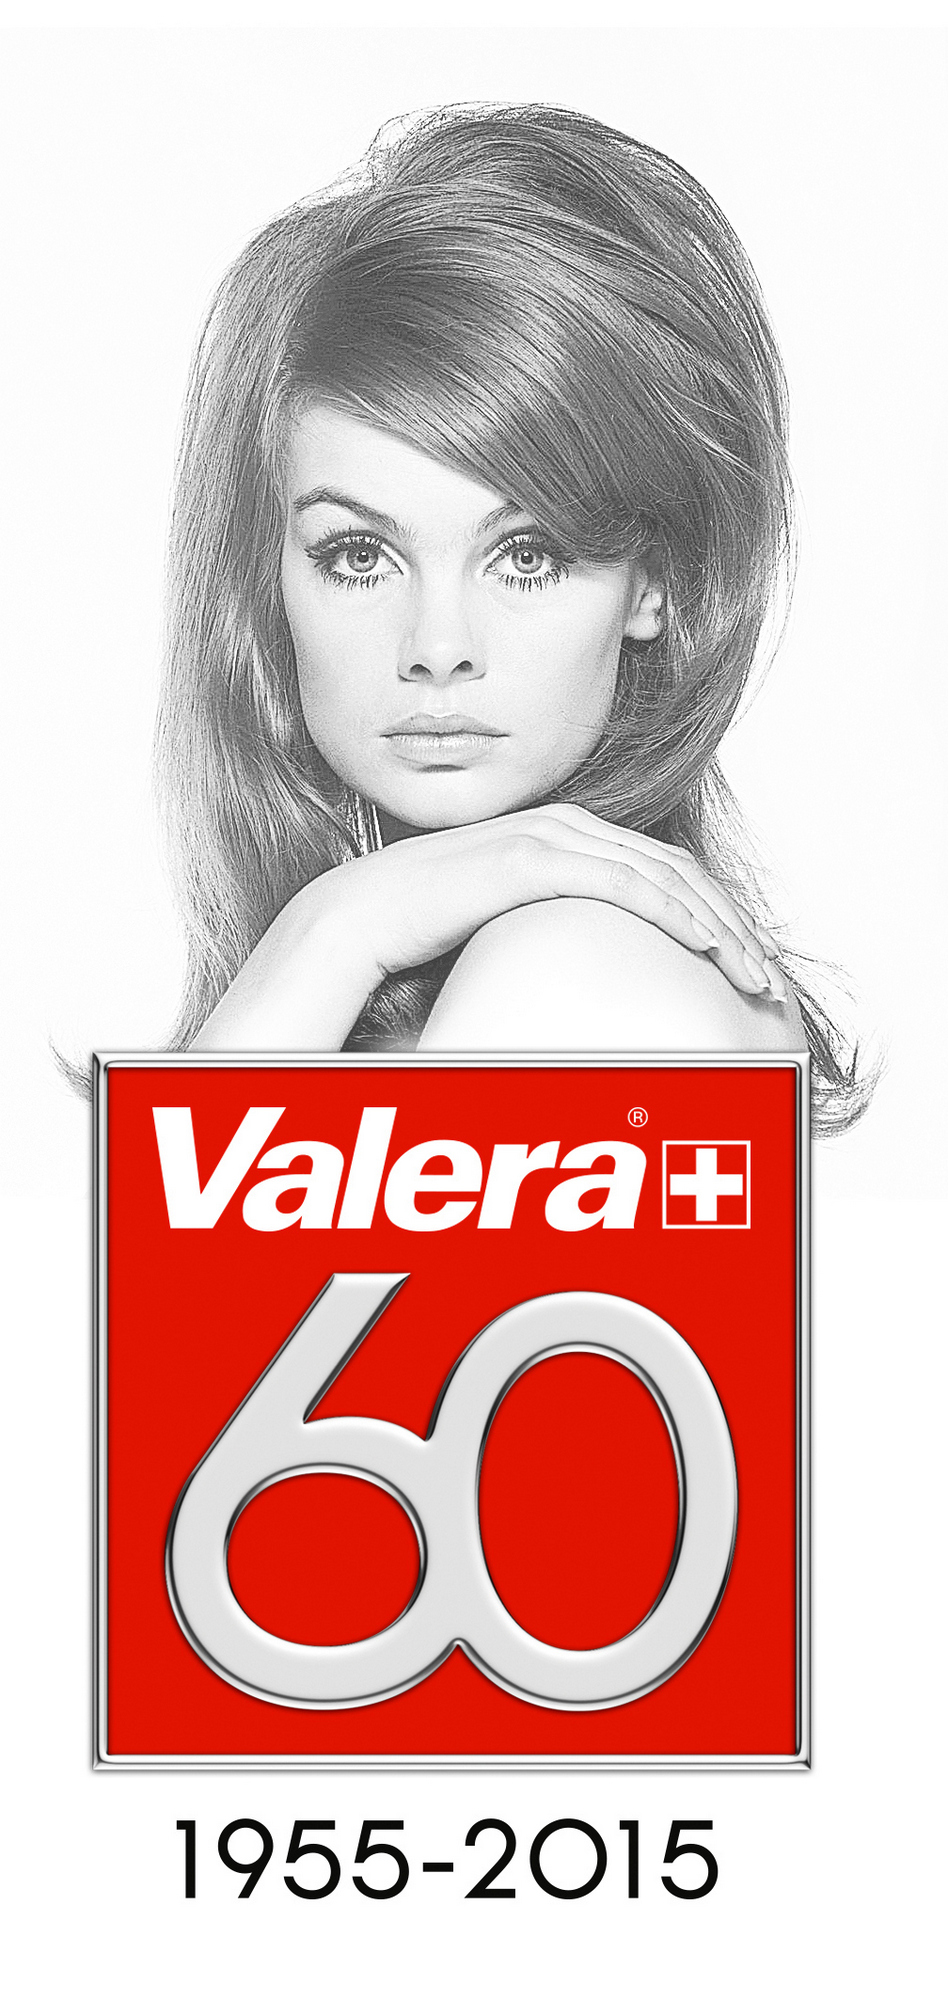 Valera 60 years .jpg